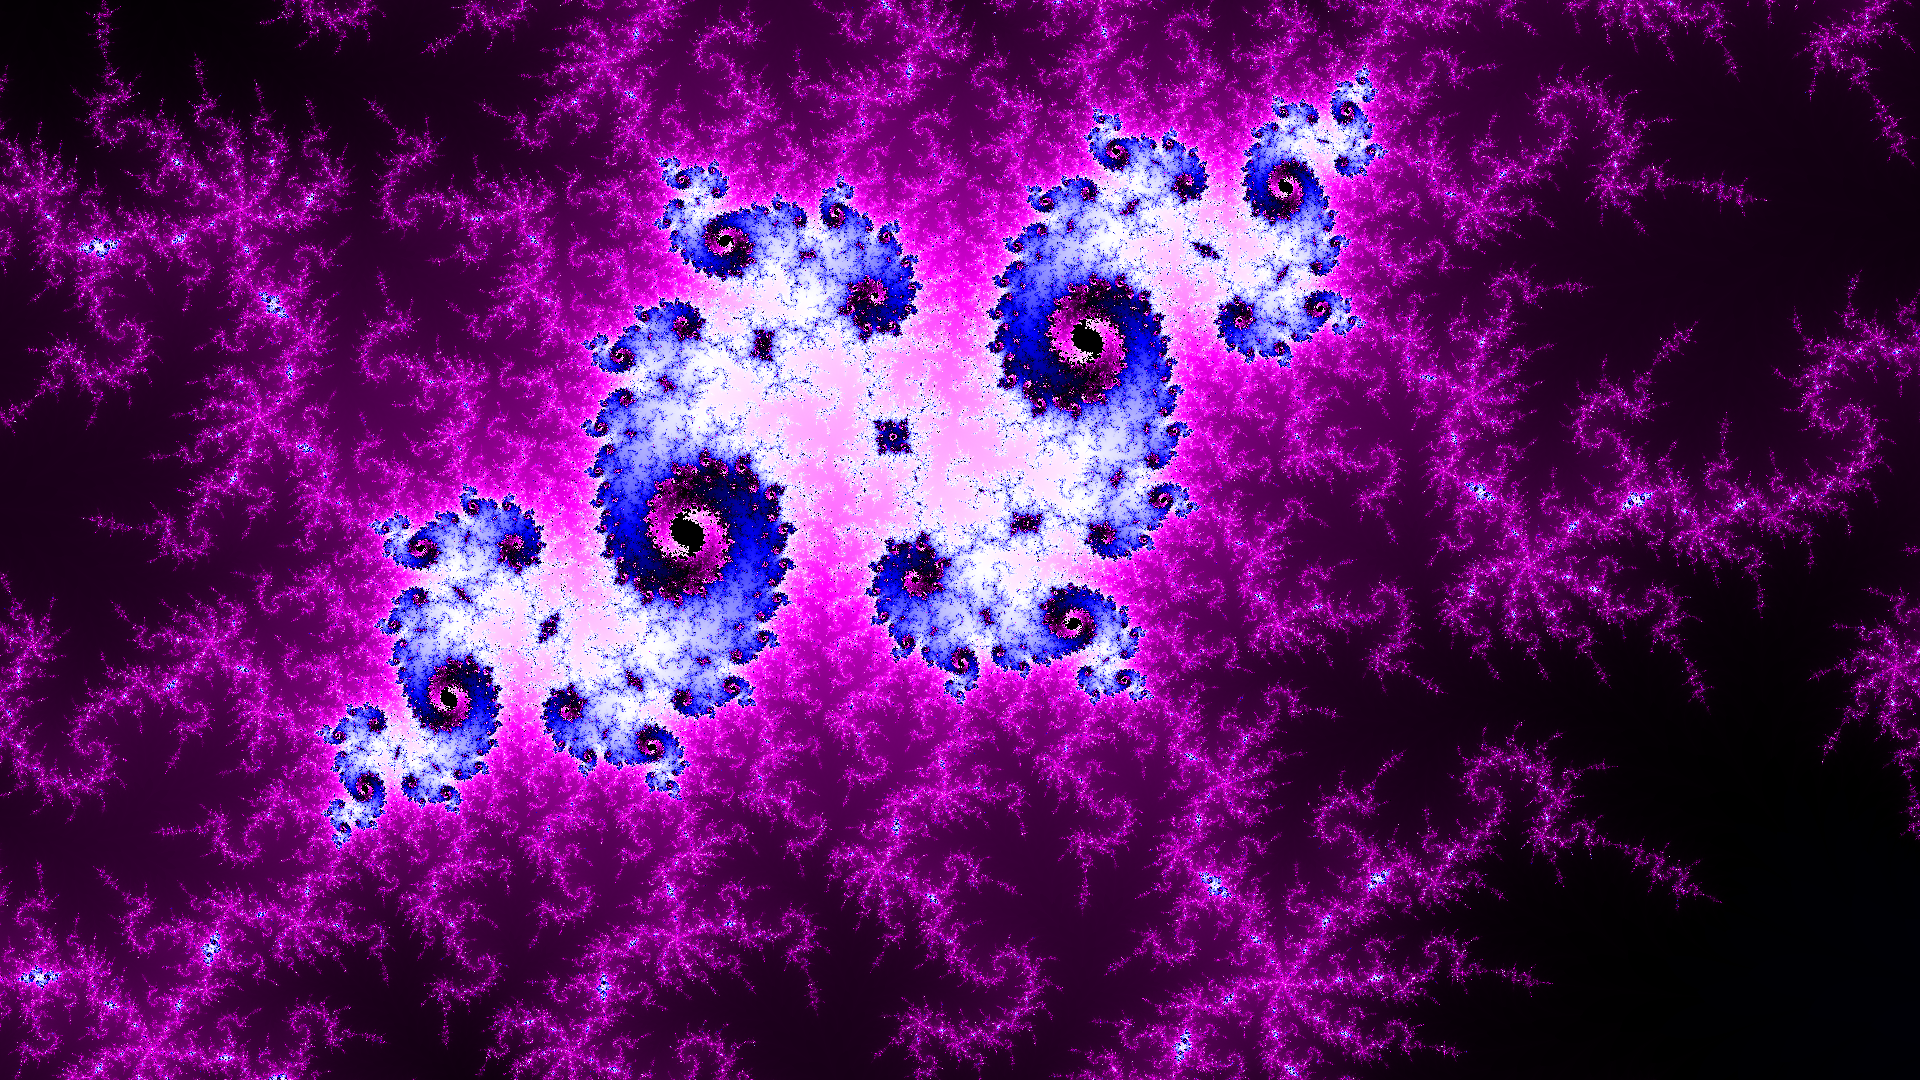 The mandelbrot fractal